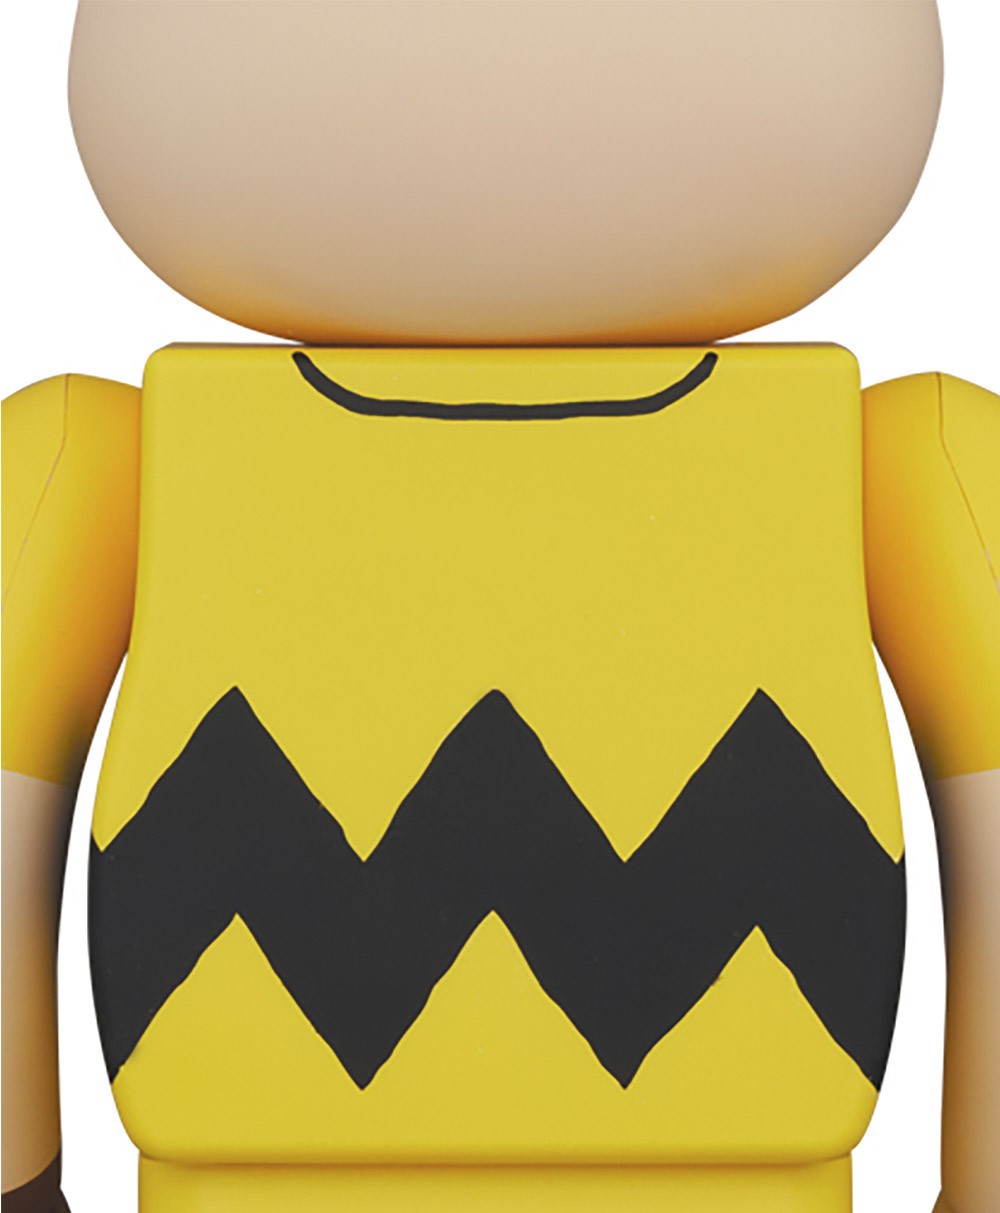 Der Be@rbrick Charlie Brown  hat einen gelben Pulli mit einer  Zickzacklinie an.